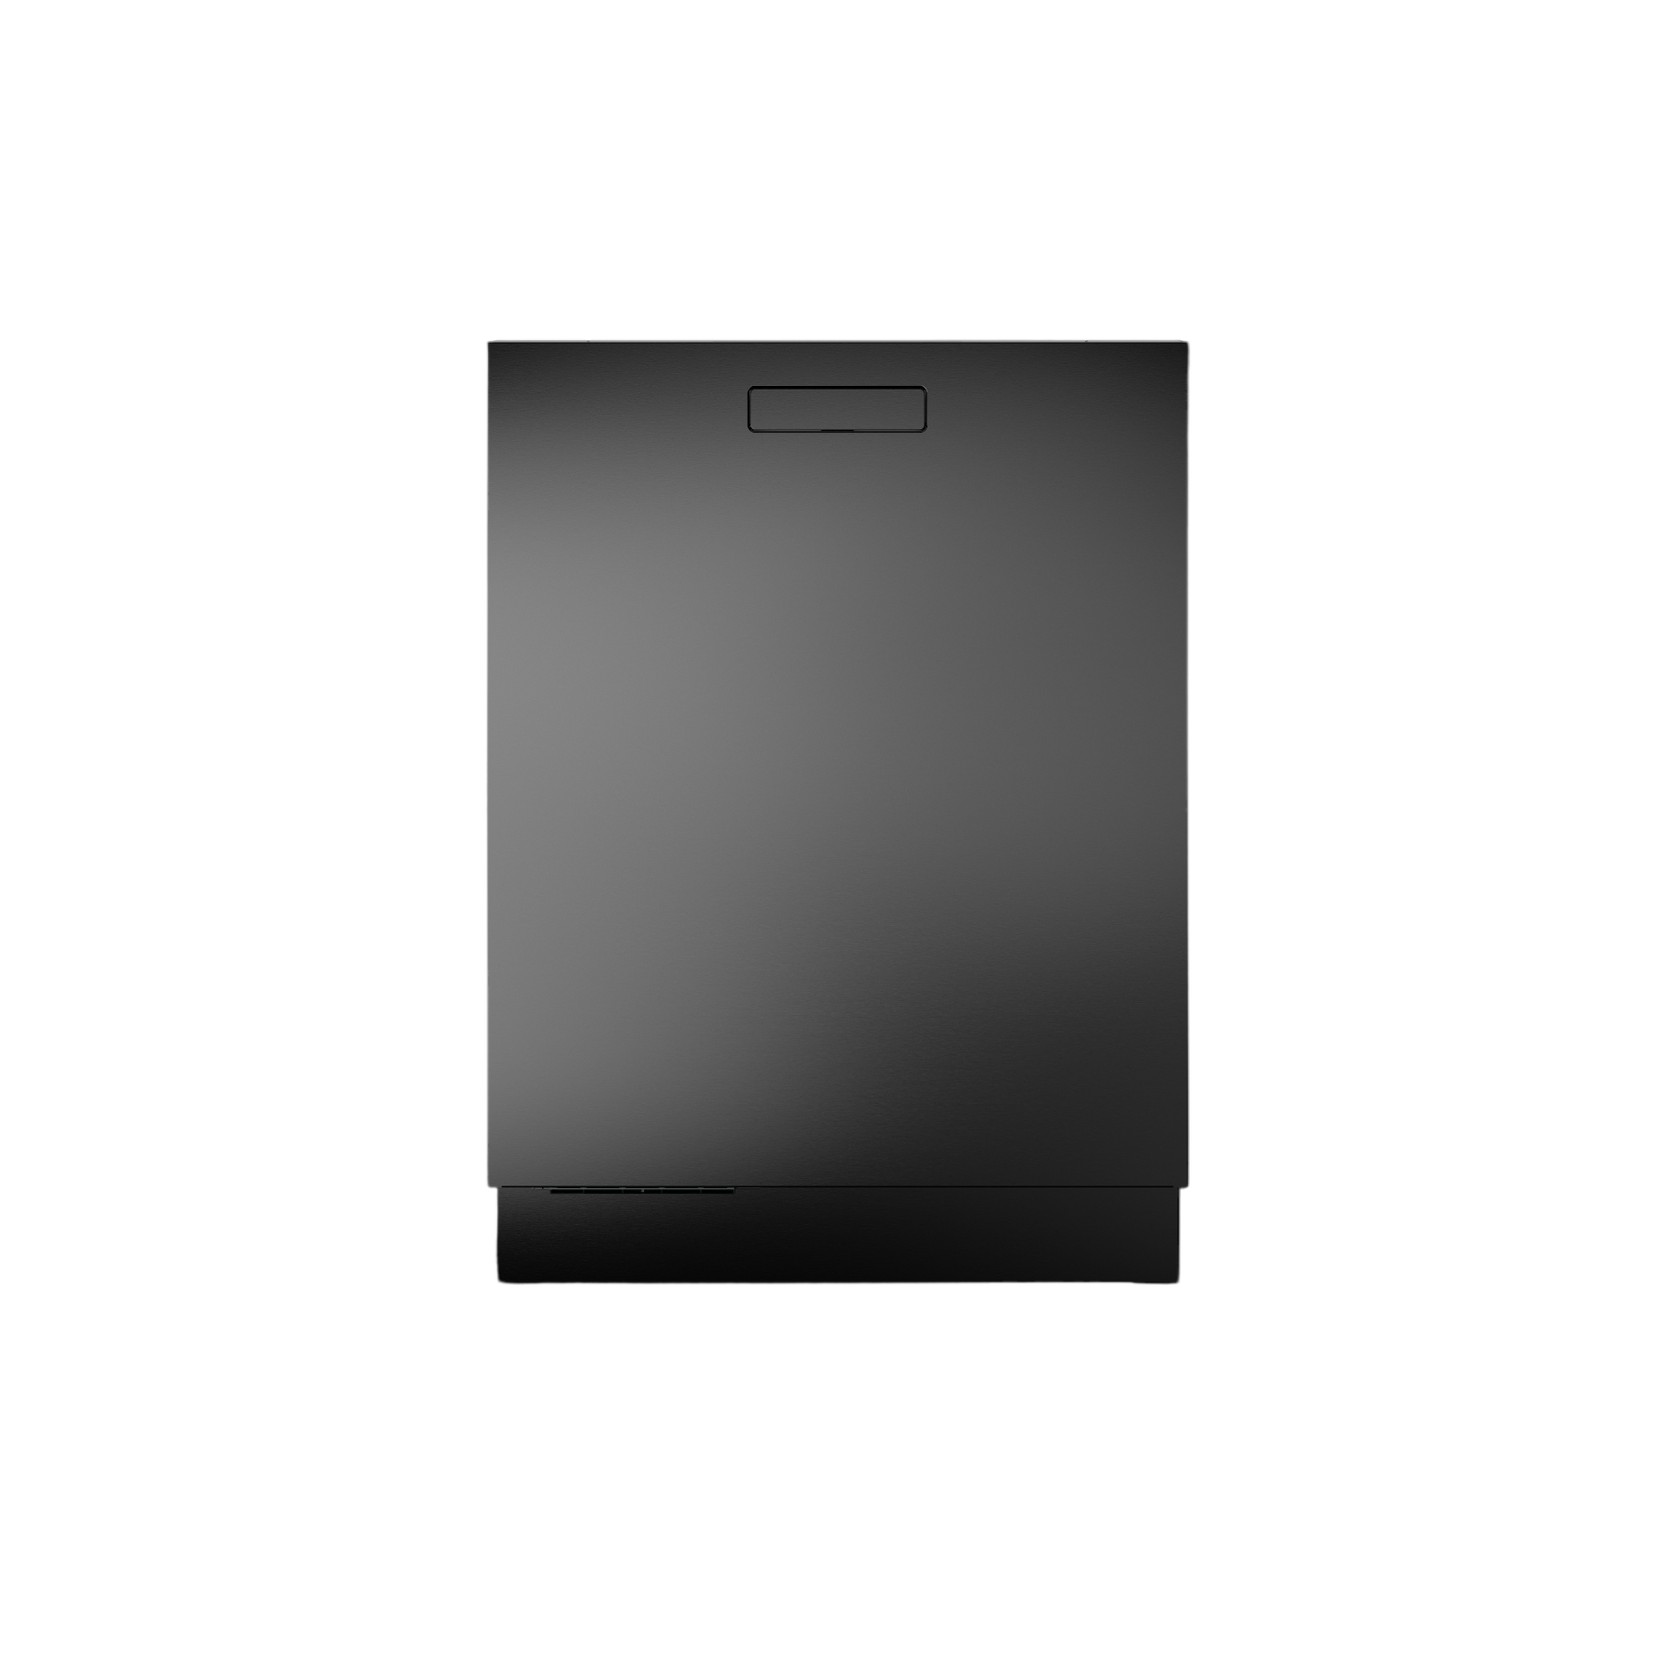 82cm Dishwasher BI 
Logic Black Steel gallery detail image